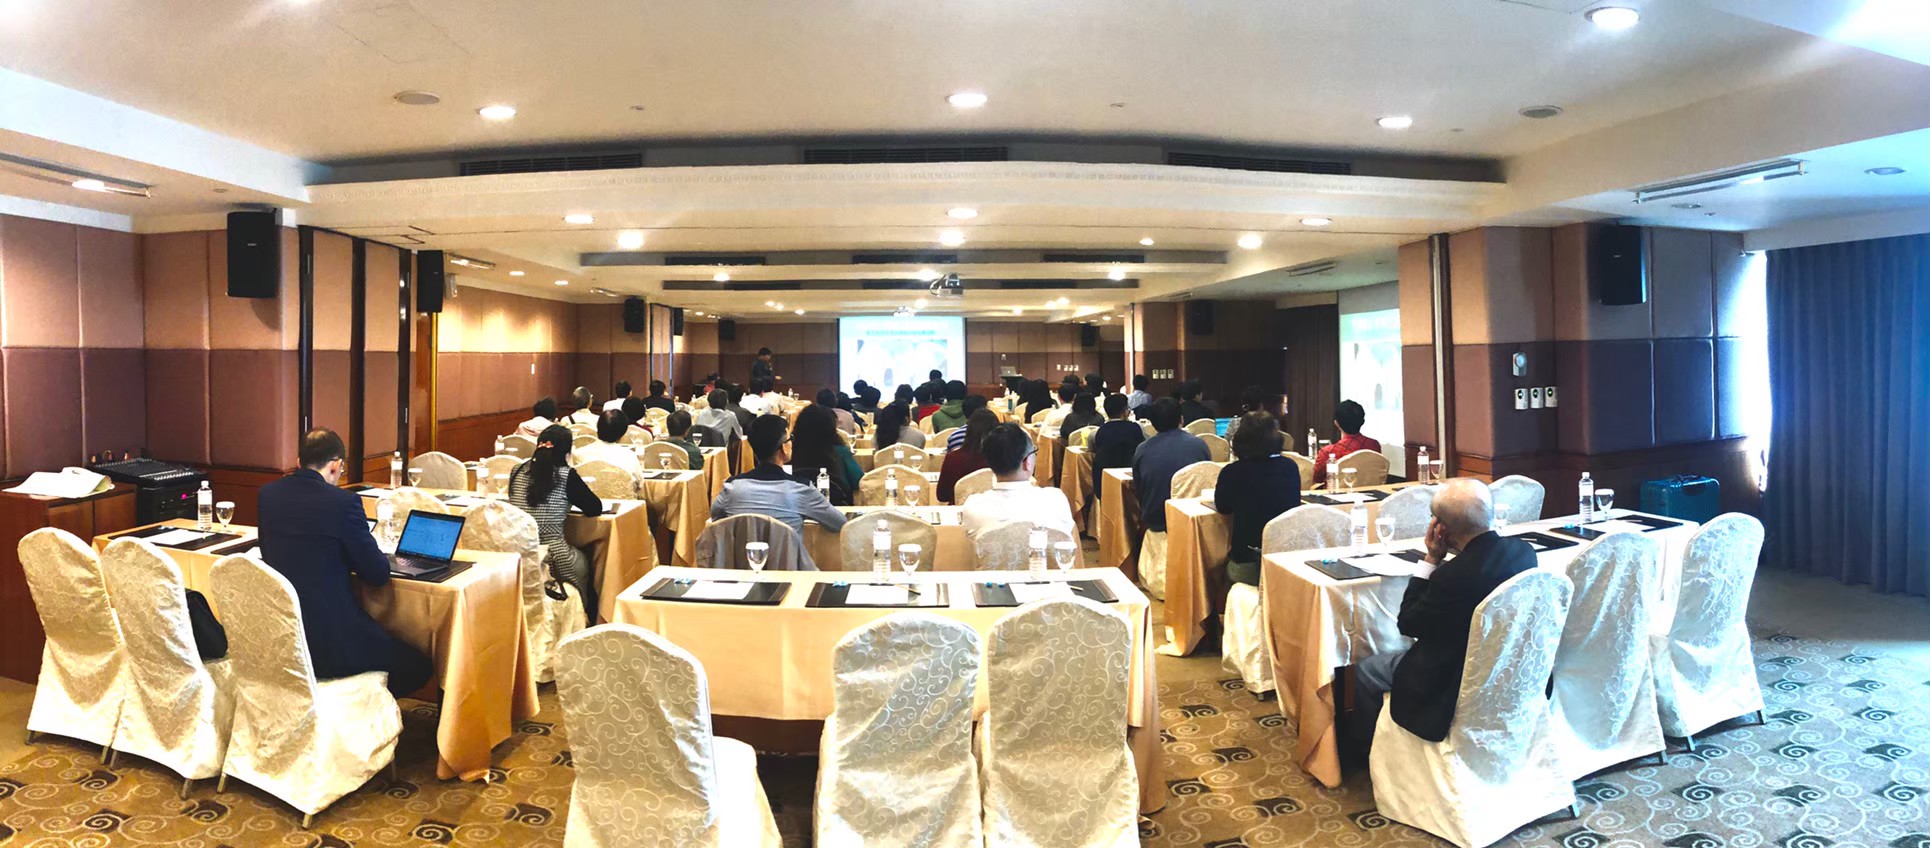 111位皮膚科醫師參加2019年3月17日元鴻生技在高雄舉辦的濕疹研討會